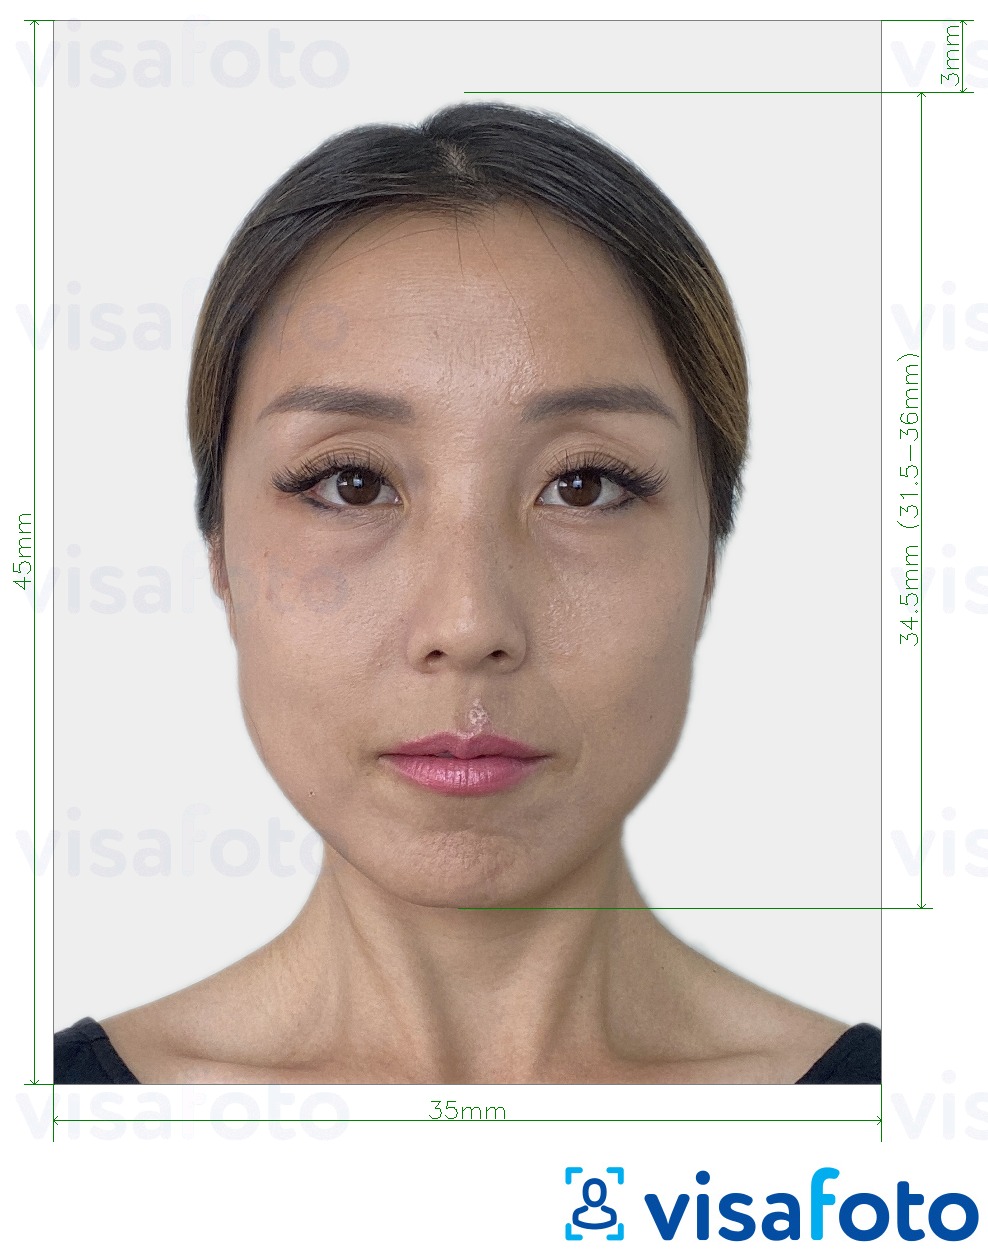 Exemple de foto per a Tailàndia Visa 35x45 mm (3.5x4.5 cm) amb la mida exacta especificada